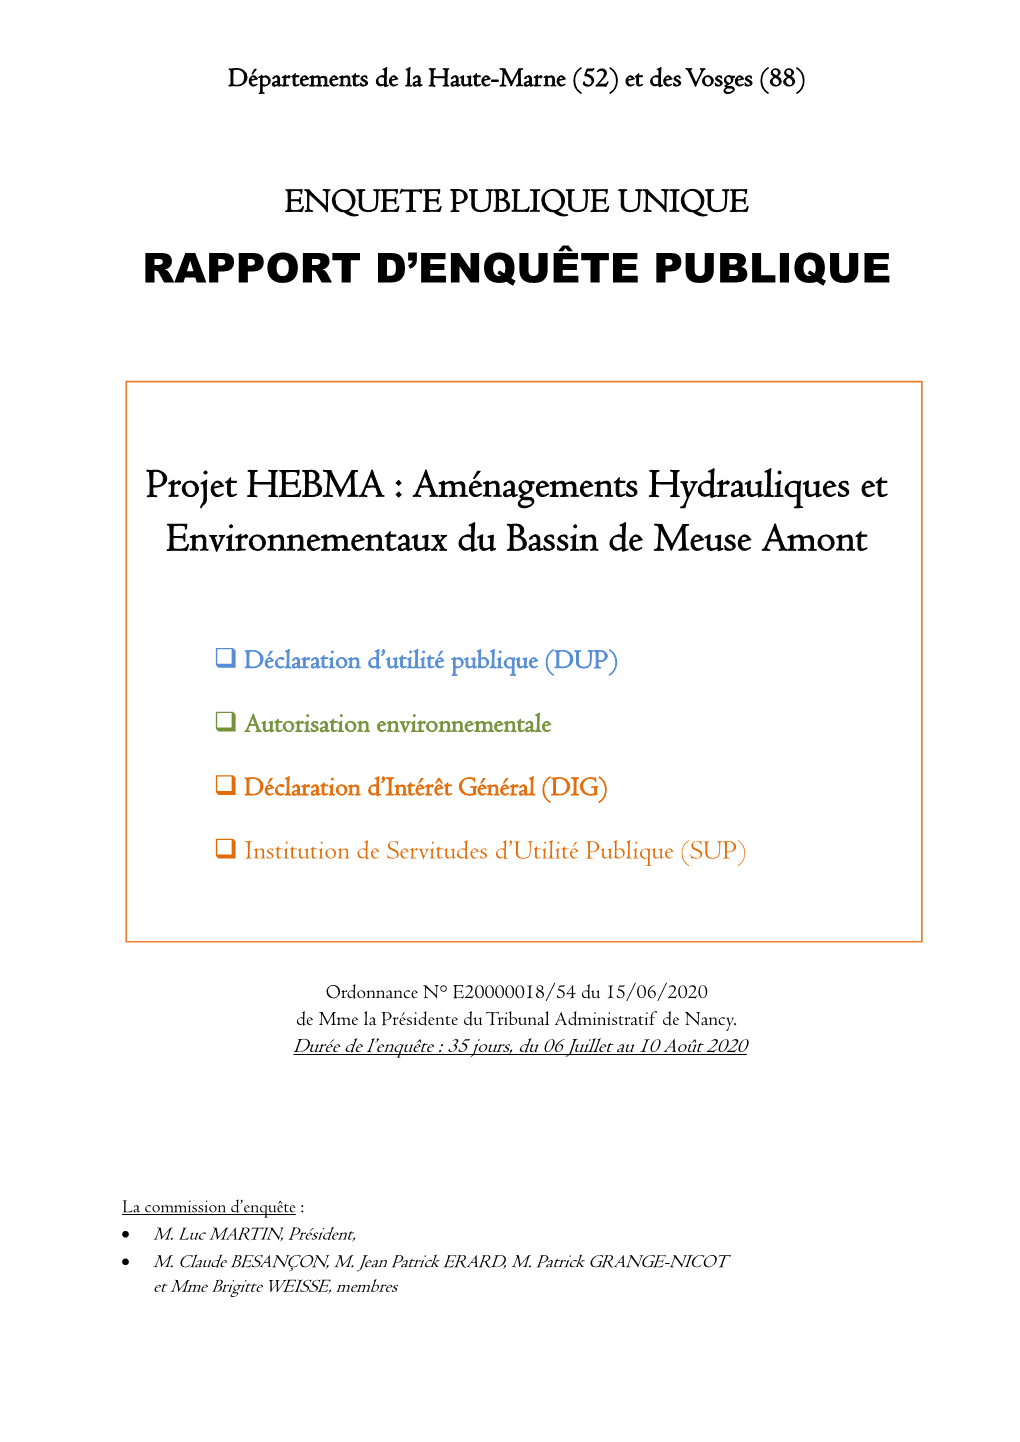 RAPPORT D'enquête PUBLIQUE Projet HEBMA : Aménagements Hydrauliques Et Environnementaux Du Bassin De Meuse Amont